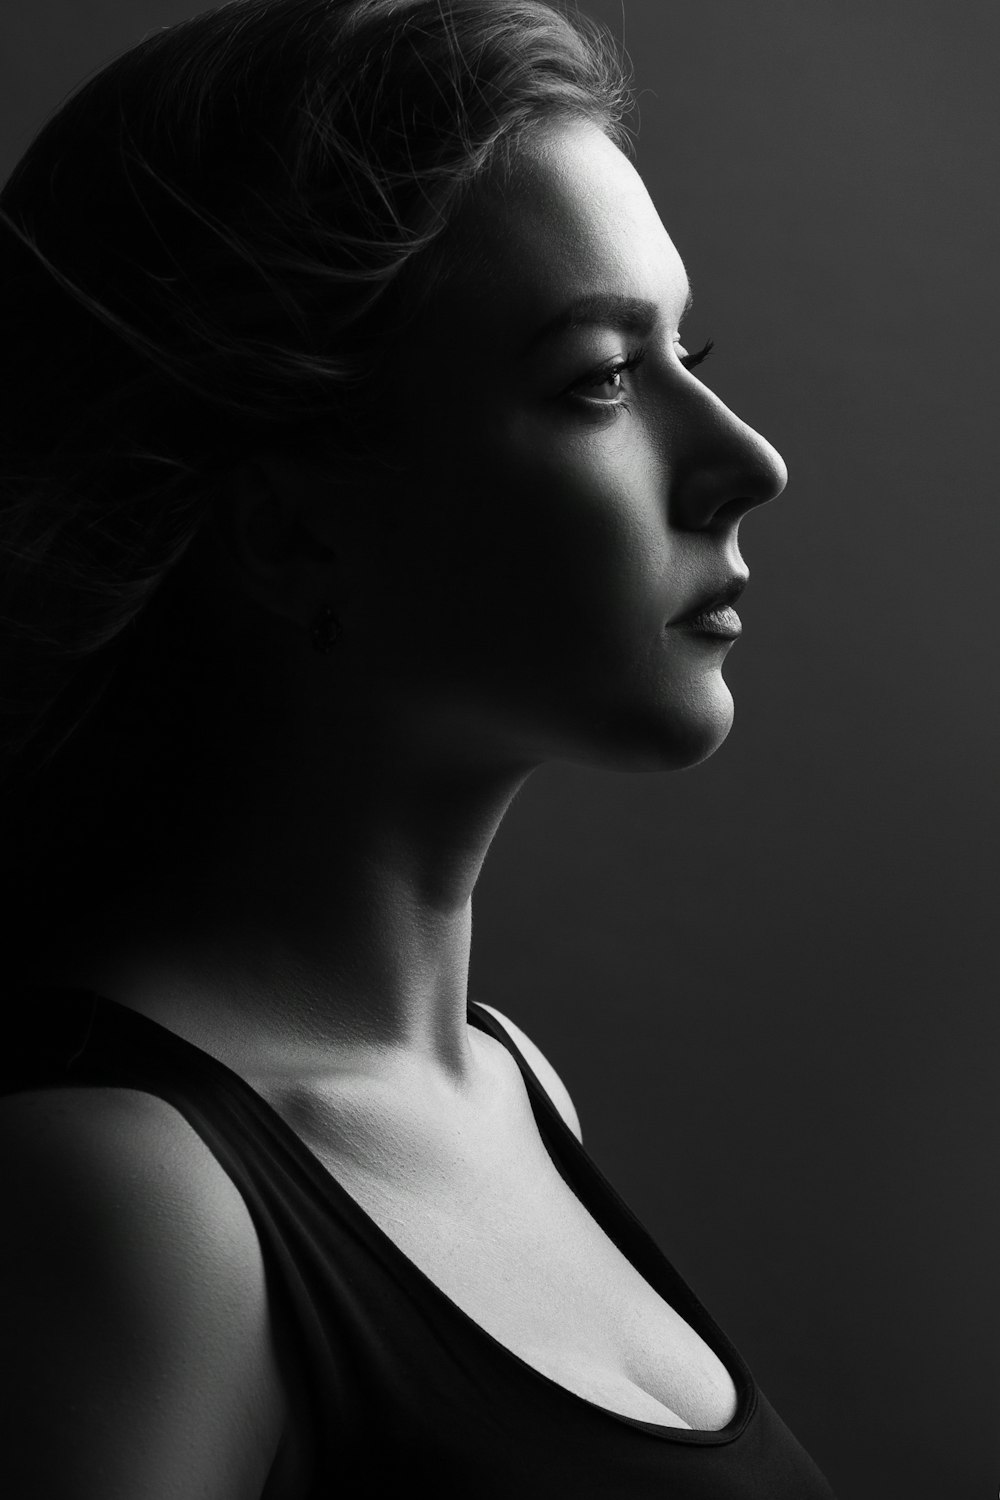 Una foto en blanco y negro de una mujer